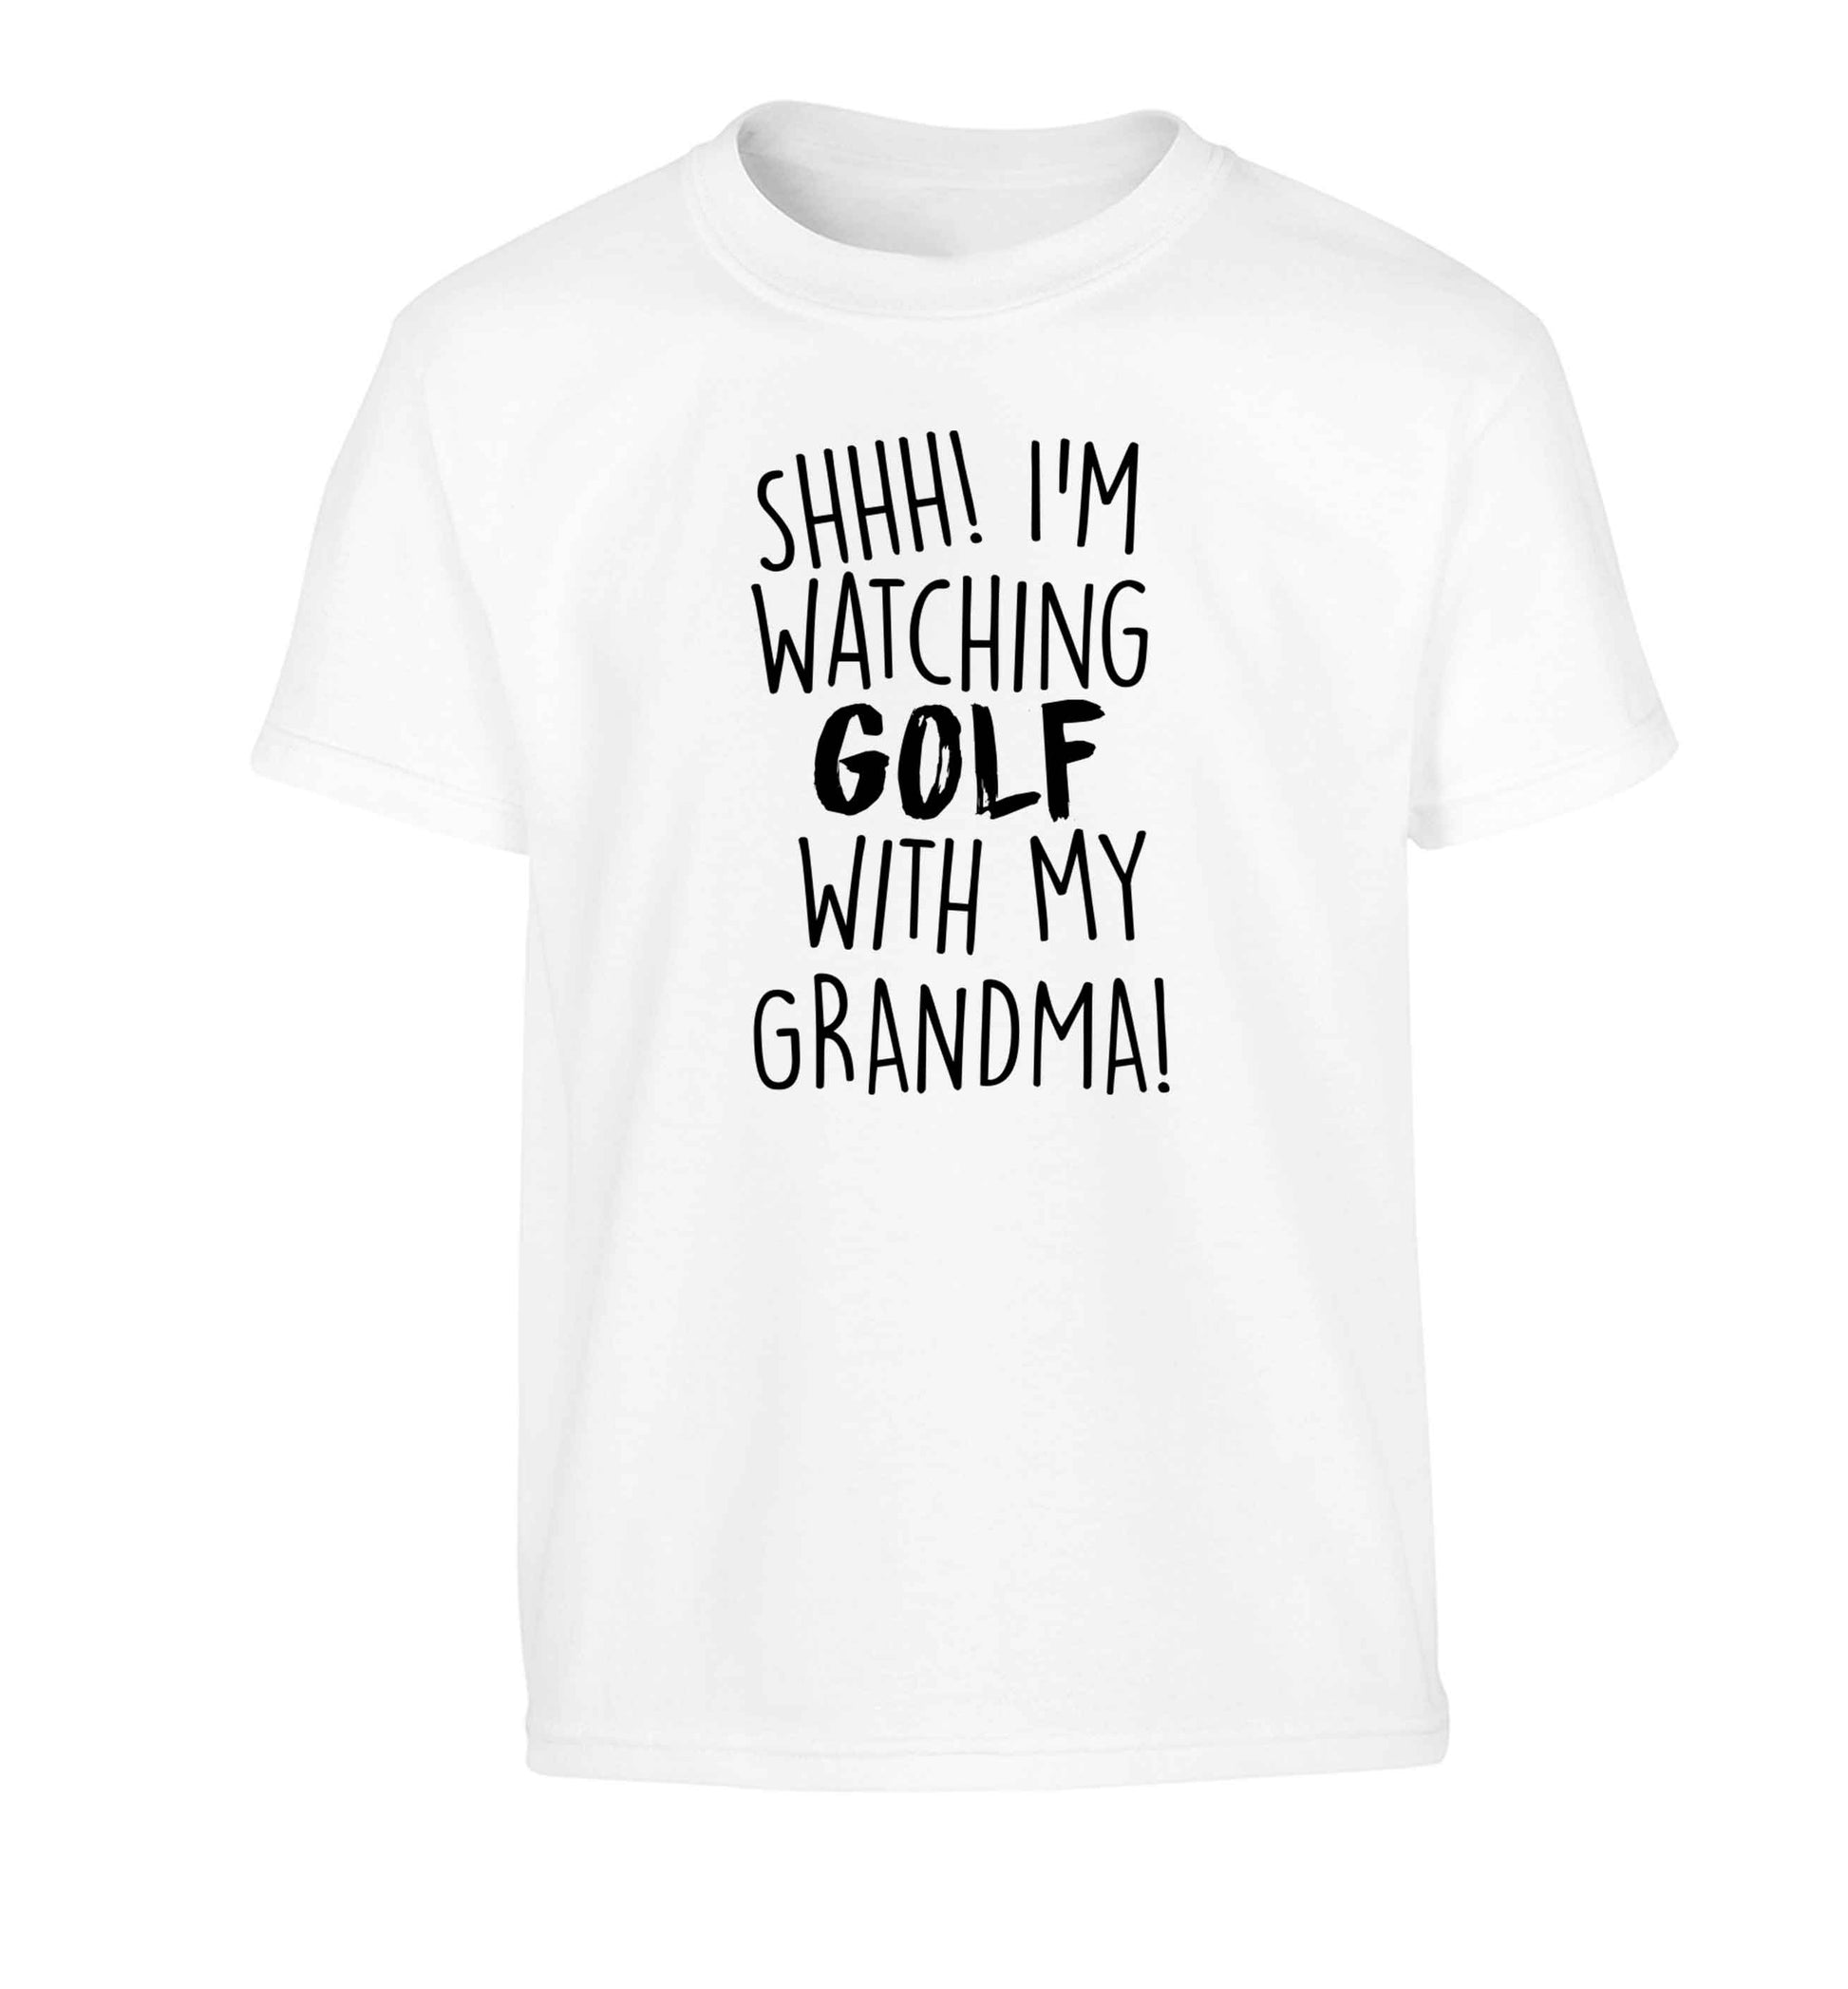 Shh I'm watching golf with my grandma Children's white Tshirt 12-13 Years